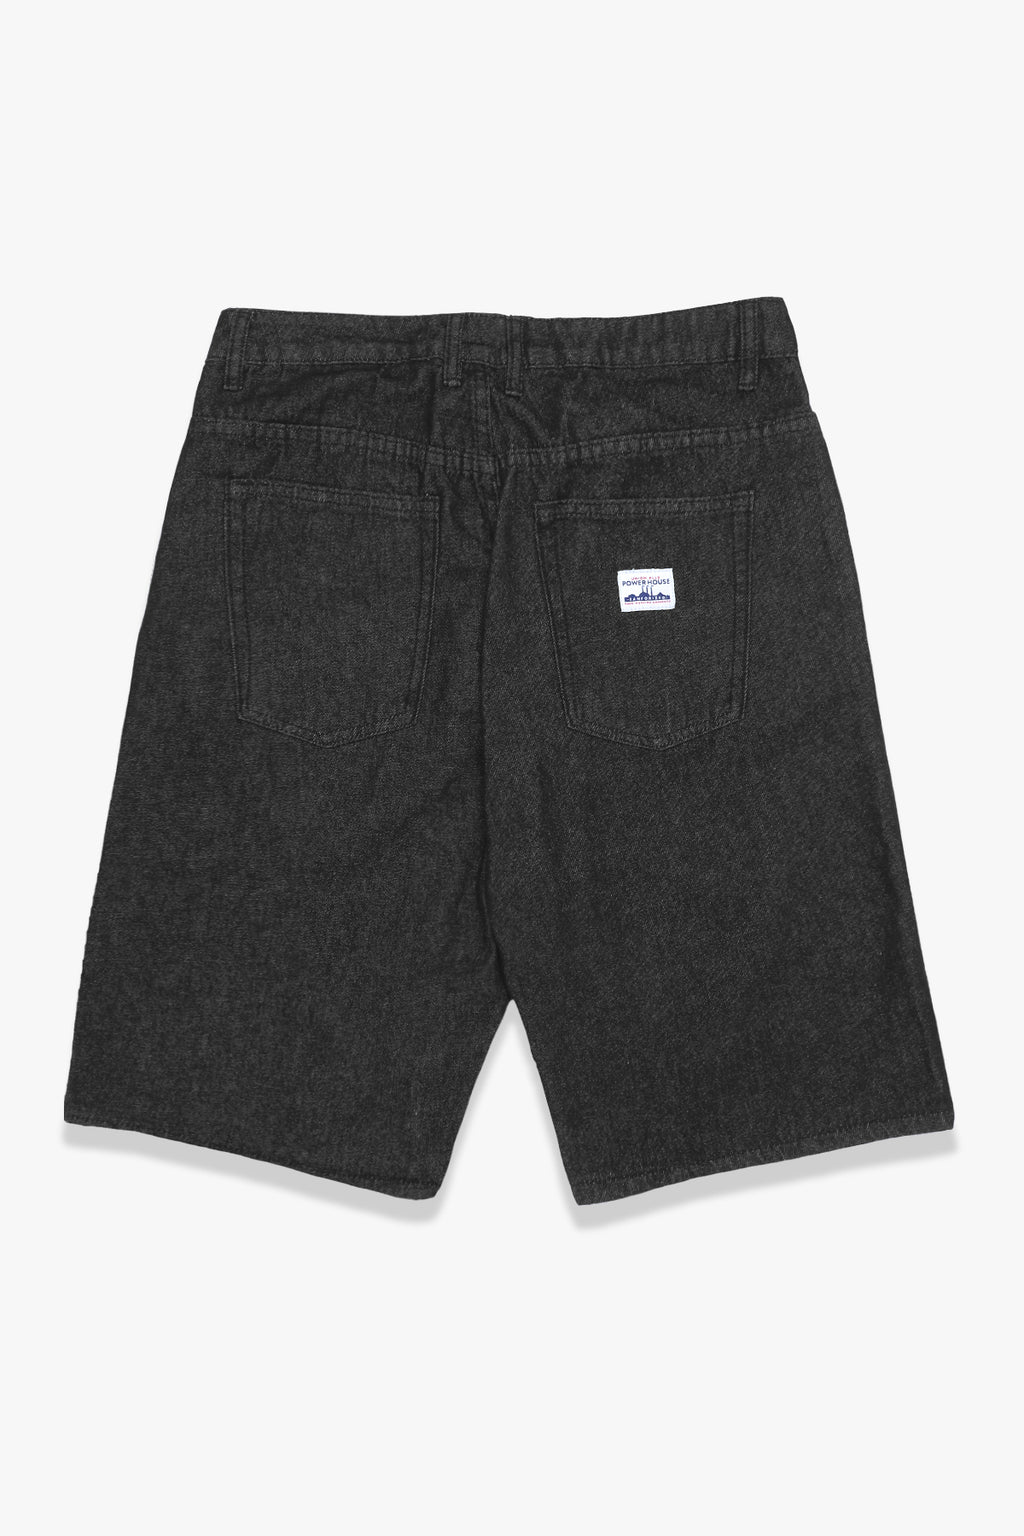 Power House - 90's Denim Shorts - Washed Black